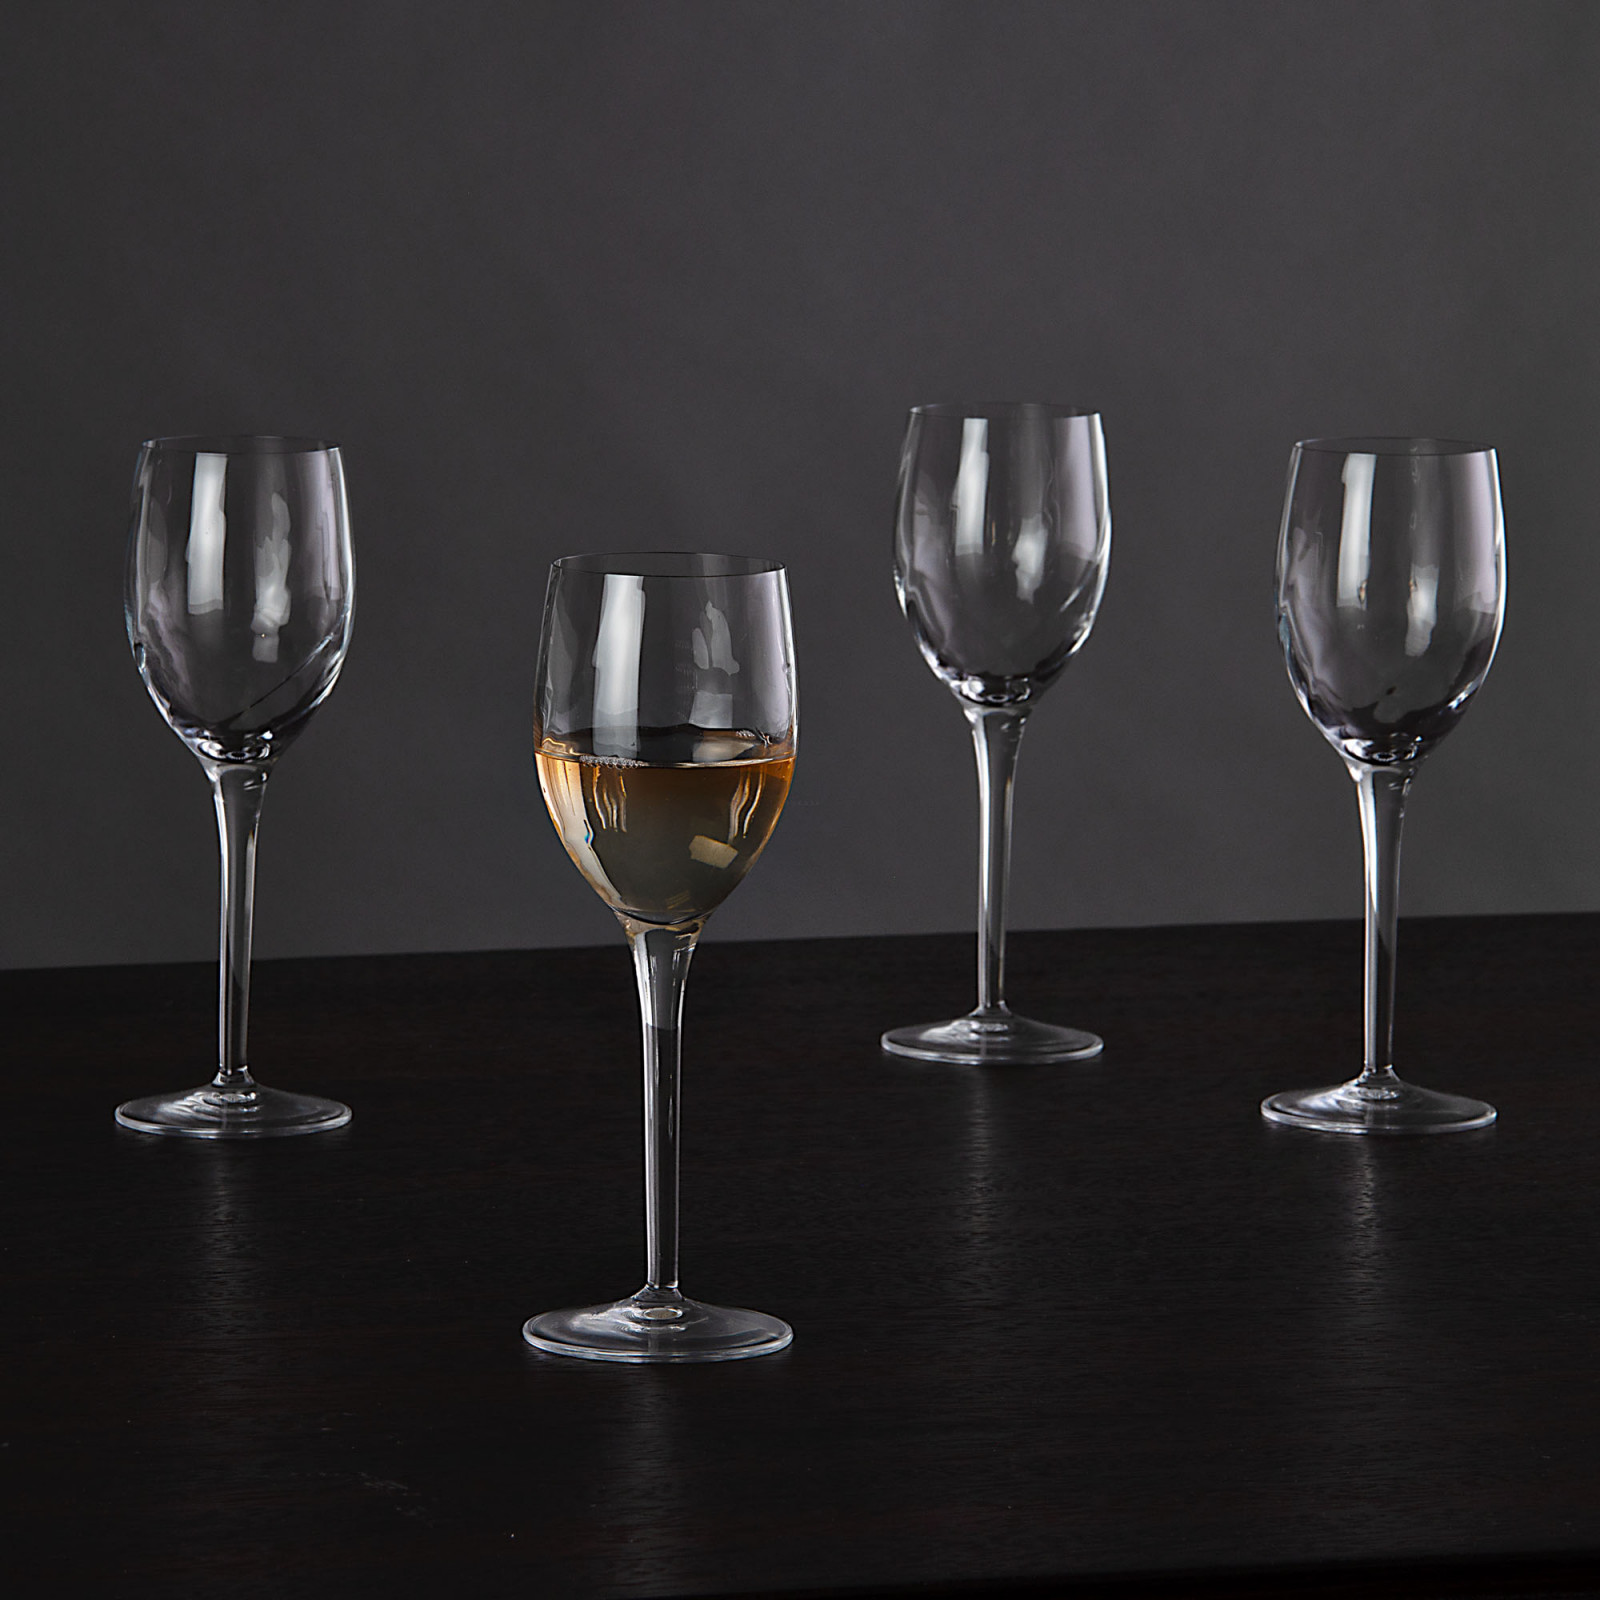 Copa vino blanco Canaletto Bormioli elaborada en vidrio transparente.